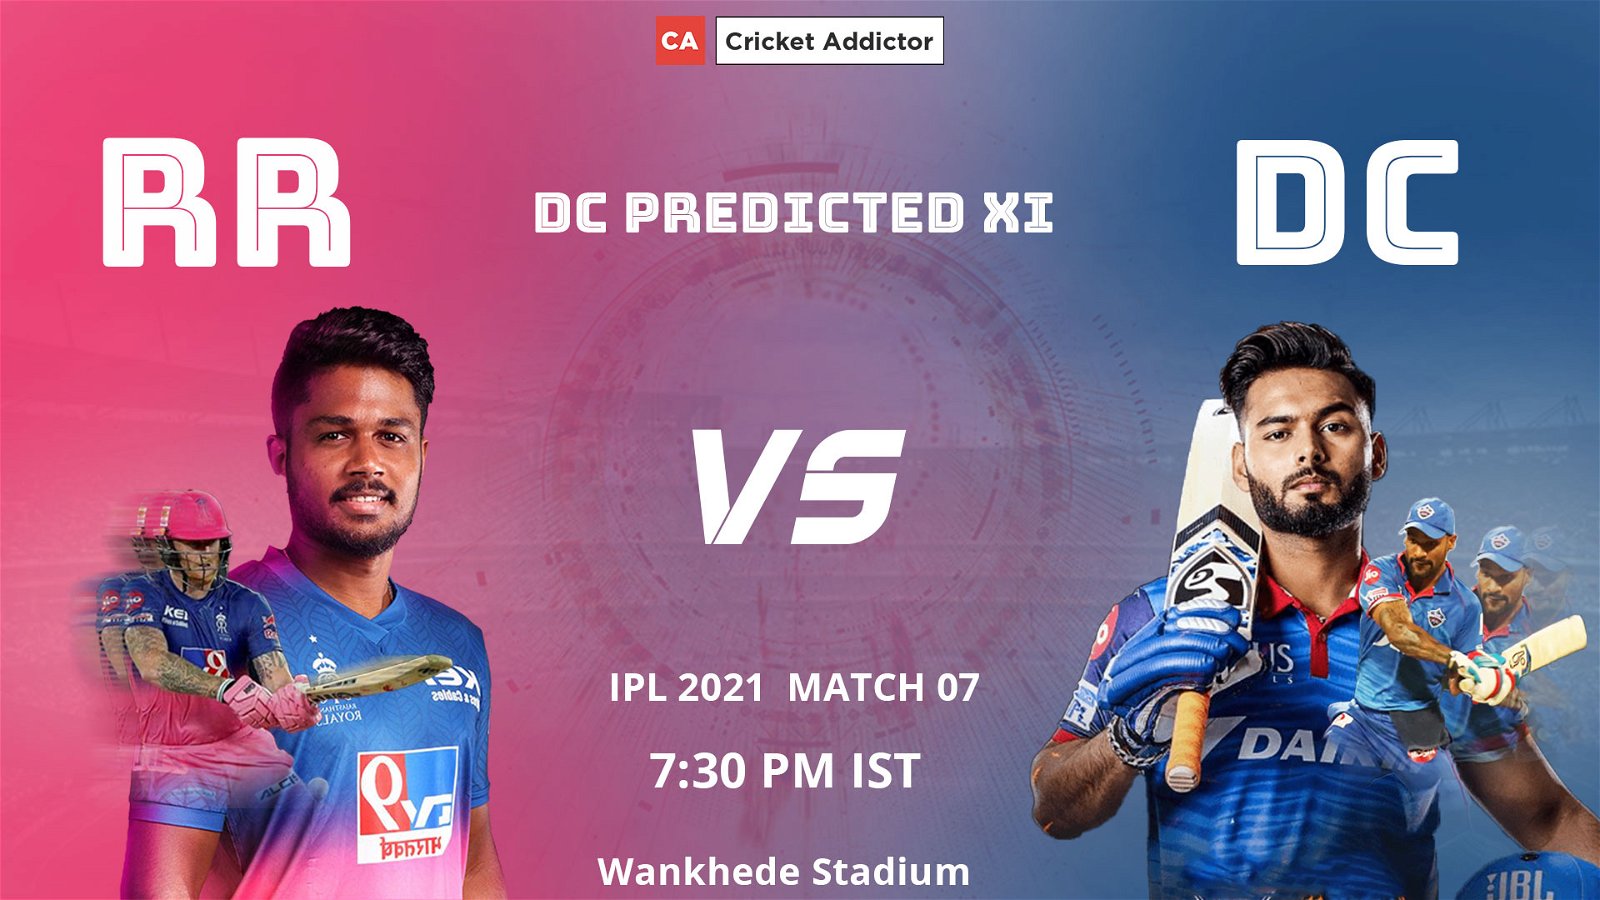 IPL 2021, Delhi Capitals, RR vs DC, predicted playing XI, playing XI